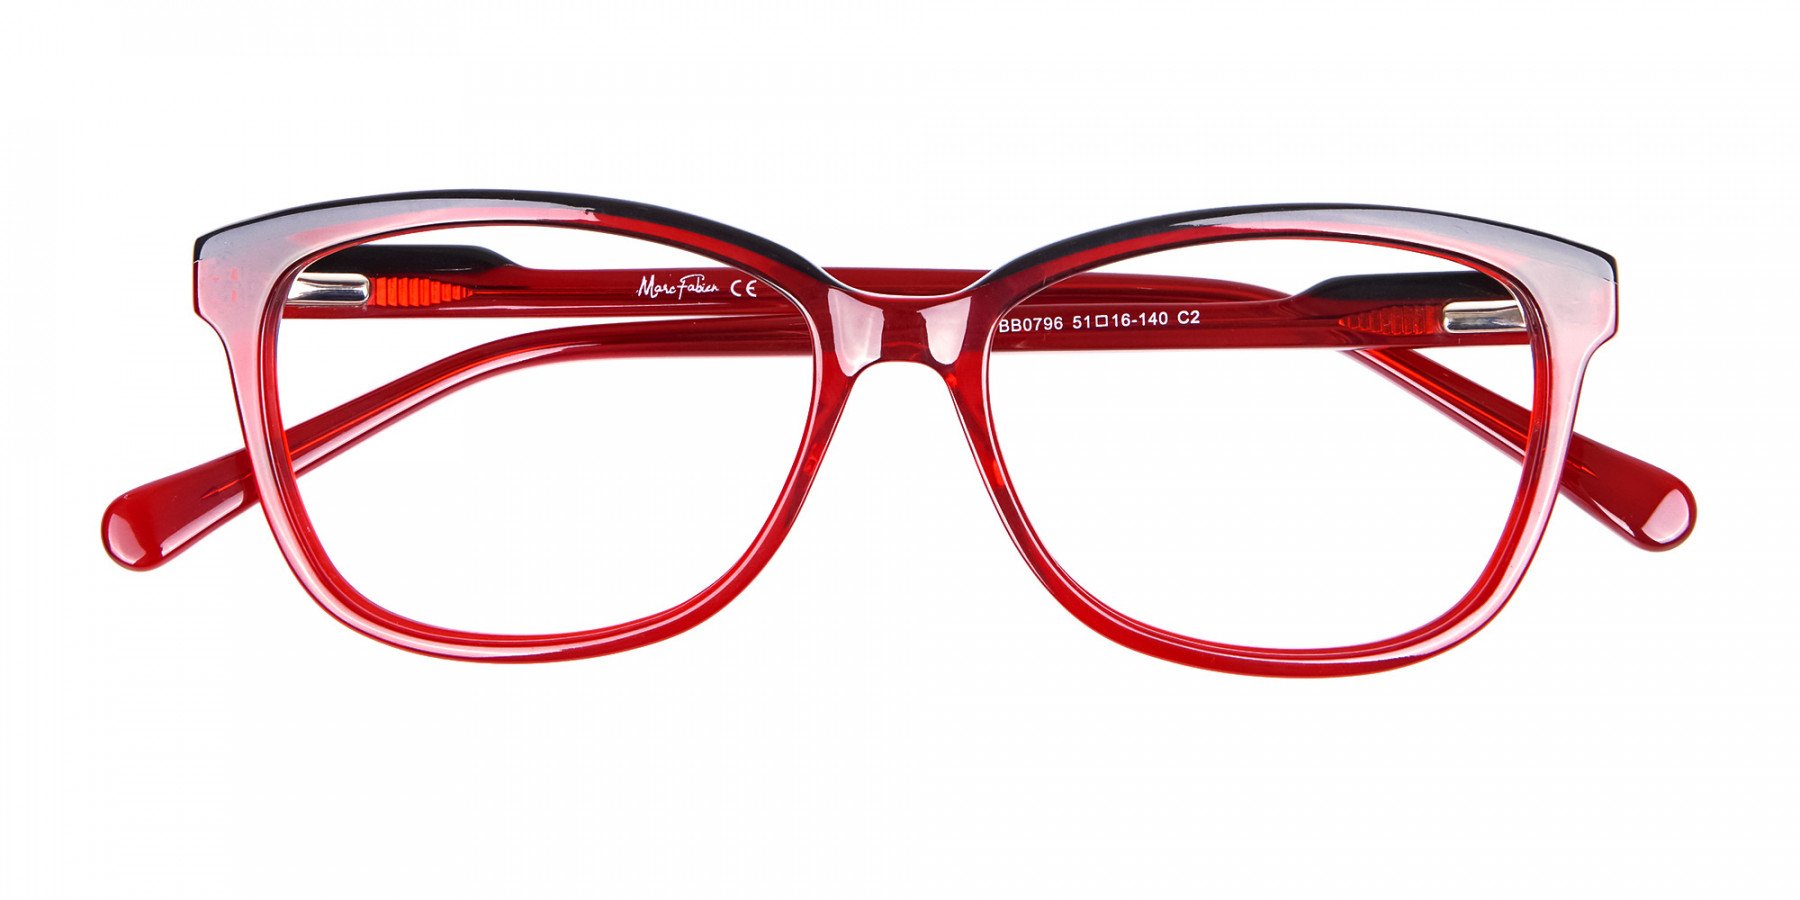 Funky Red Unisex Glasses Online UK-1